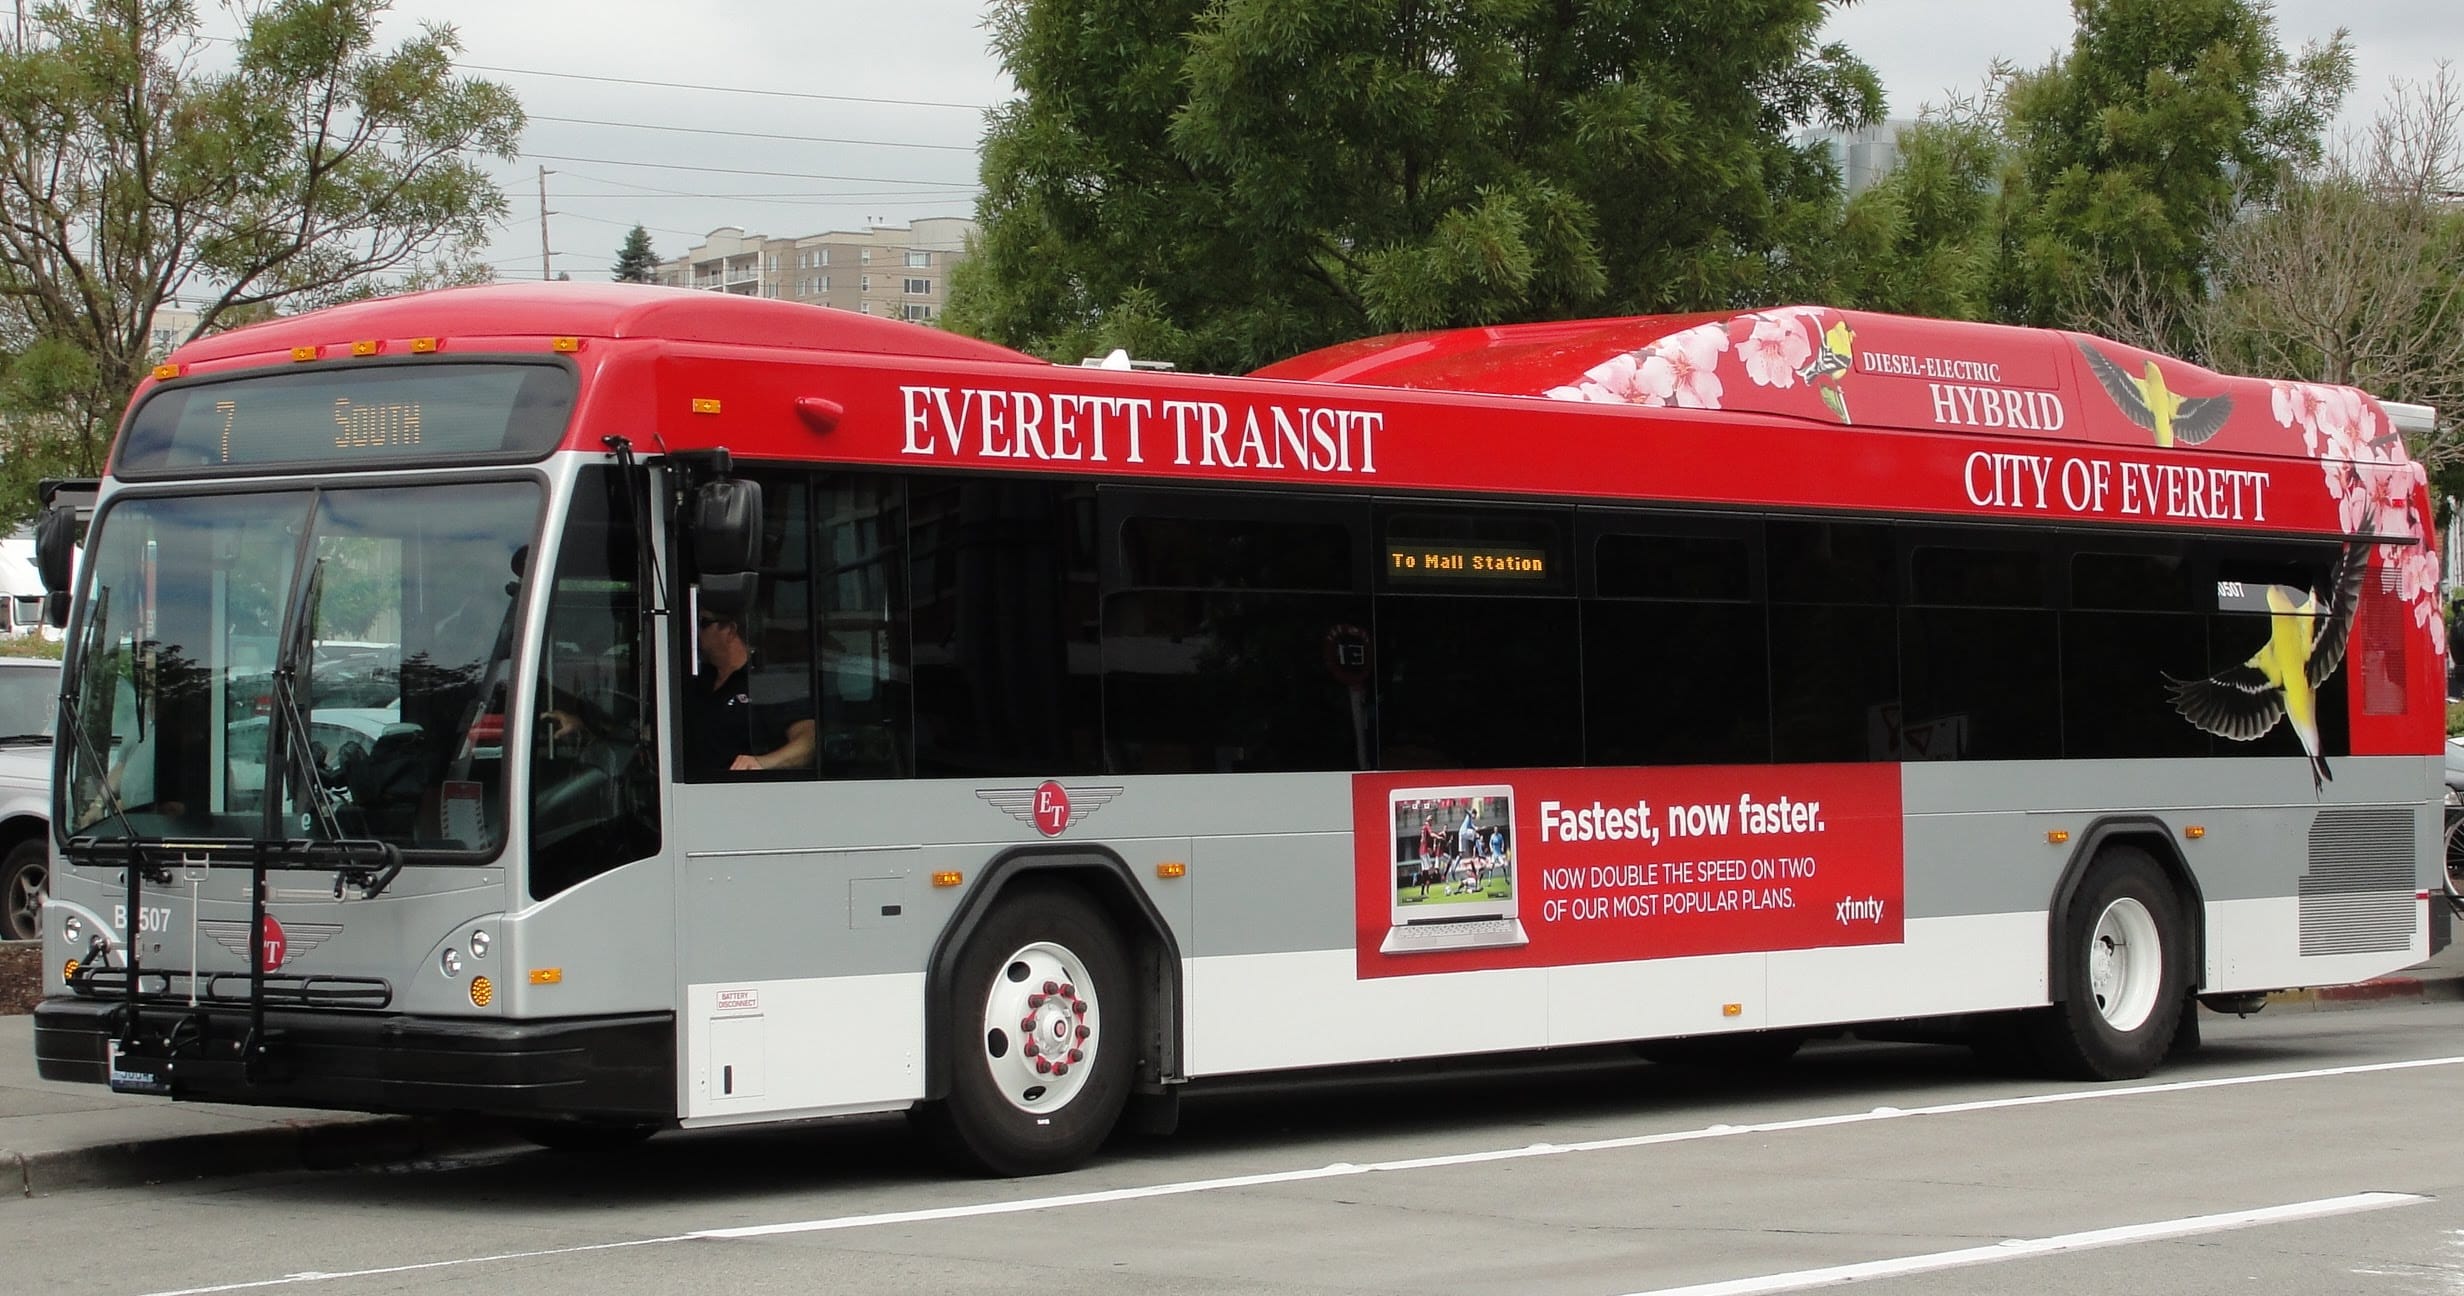 Everett transit